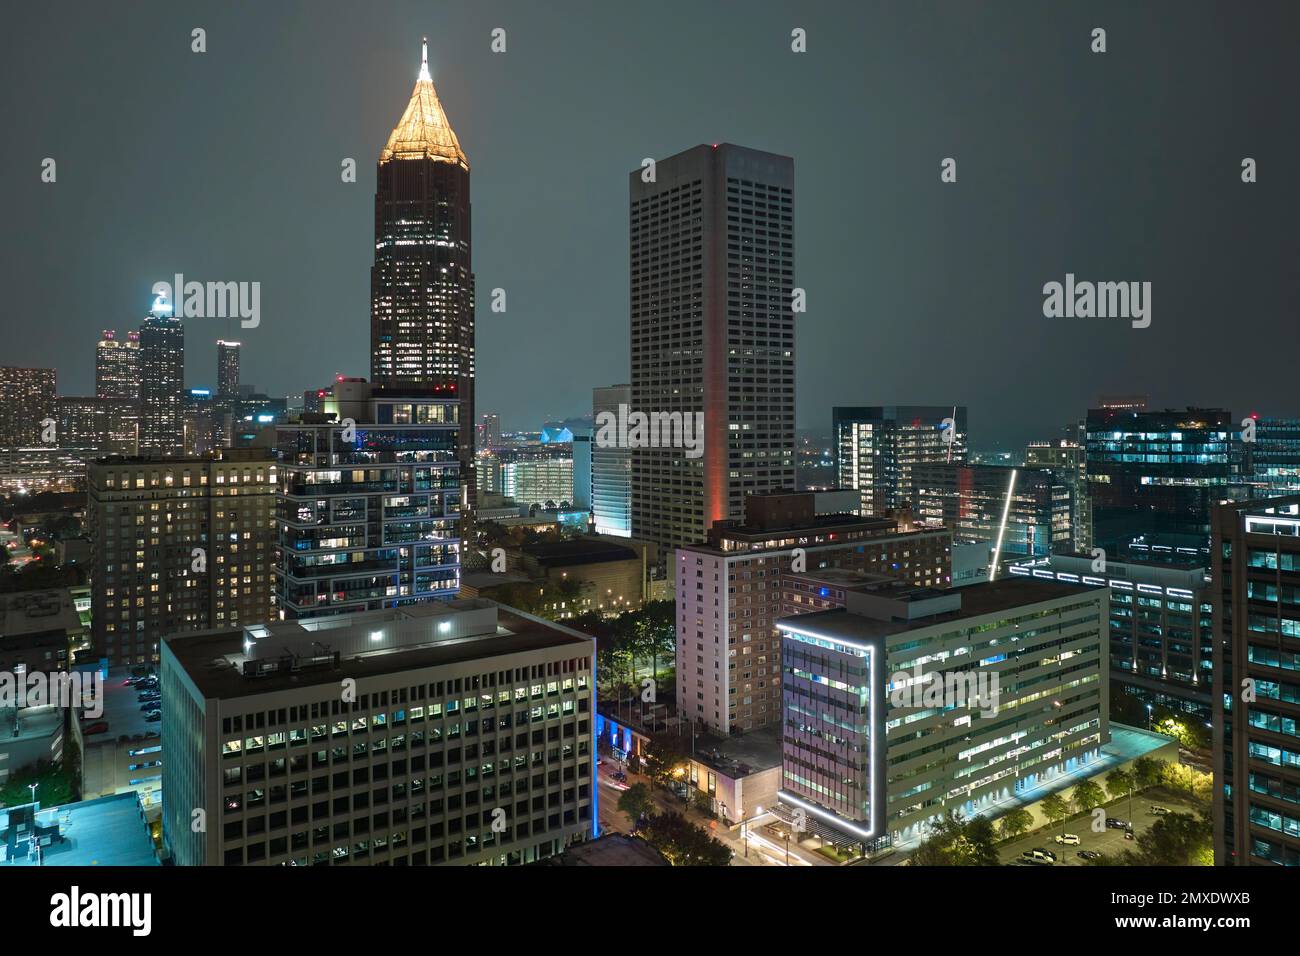 Das Stadtzentrum von Atlanta City in Georgia, USA, aus der Vogelperspektive. Hell erleuchtete Hochhäuser in der modernen amerikanischen Innenstadt. Stockfoto